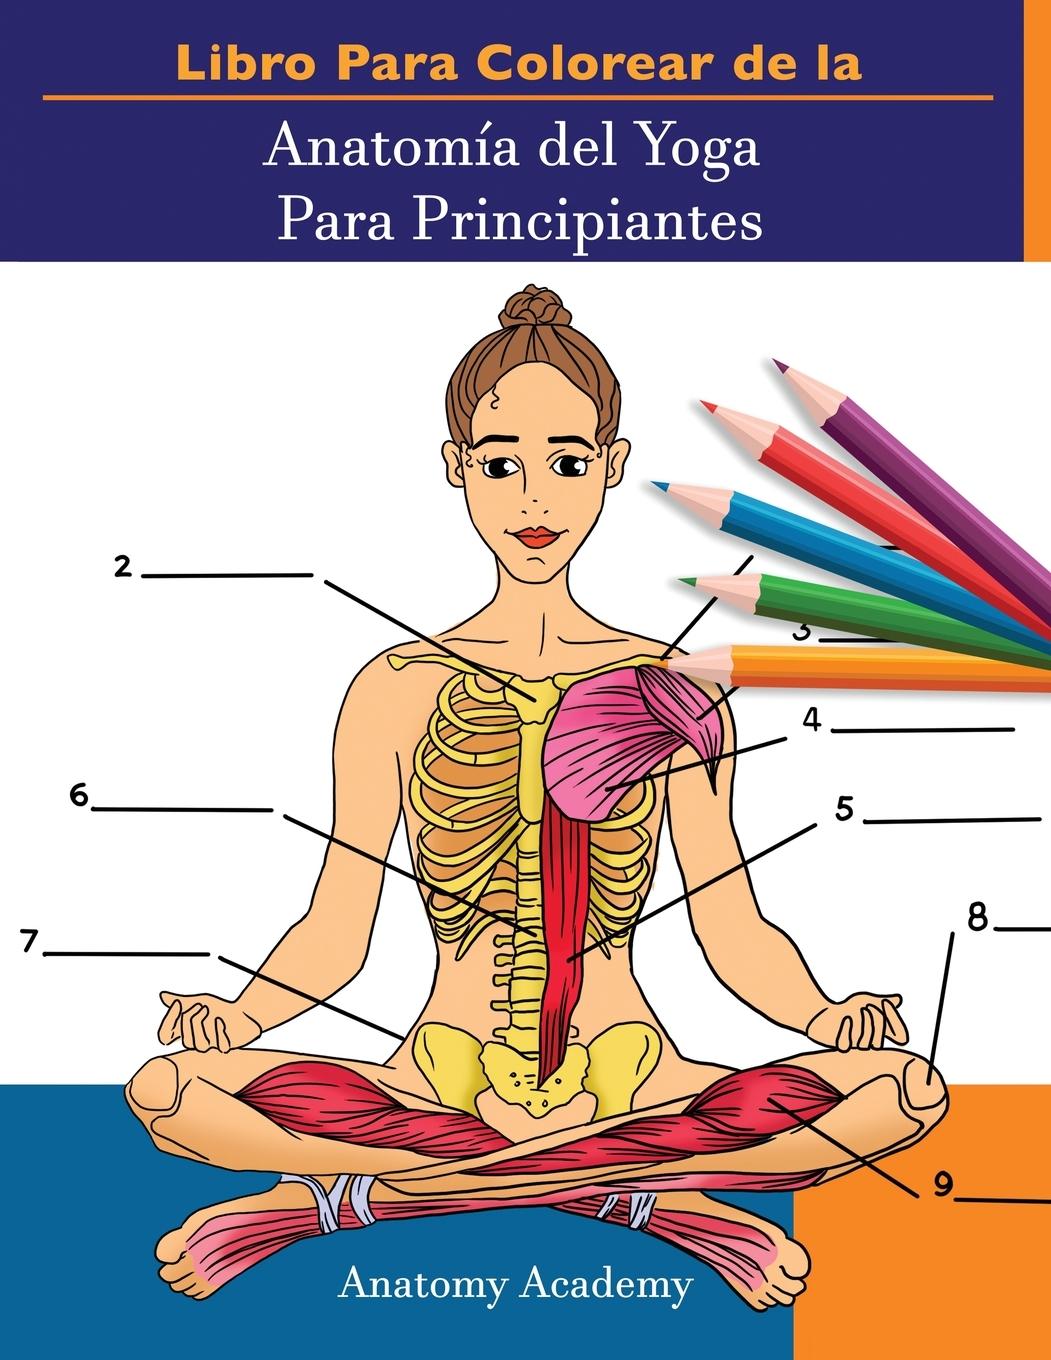 Knjiga Libro Para Colorear de la Anatomia del Yoga Para Principiantes 